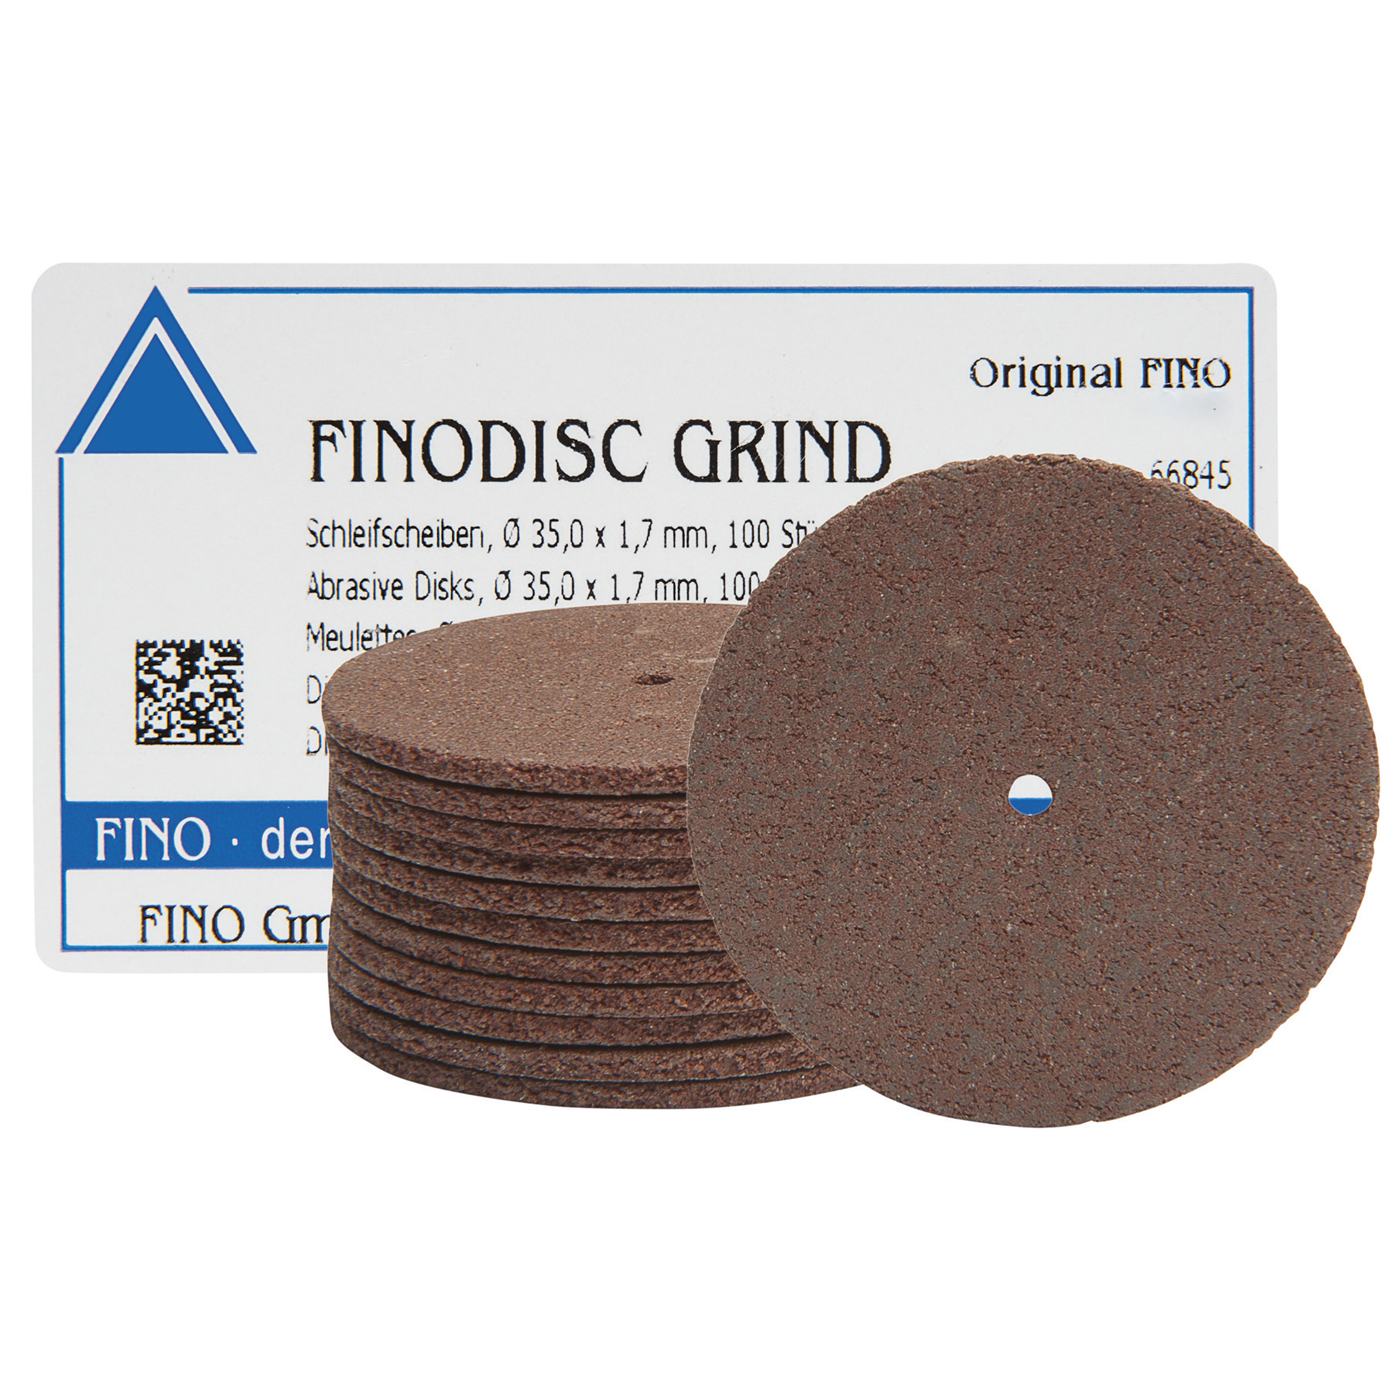 FINODISC GRIND Schleifscheiben, ø 35 x 1,7 mm - 100 Stück